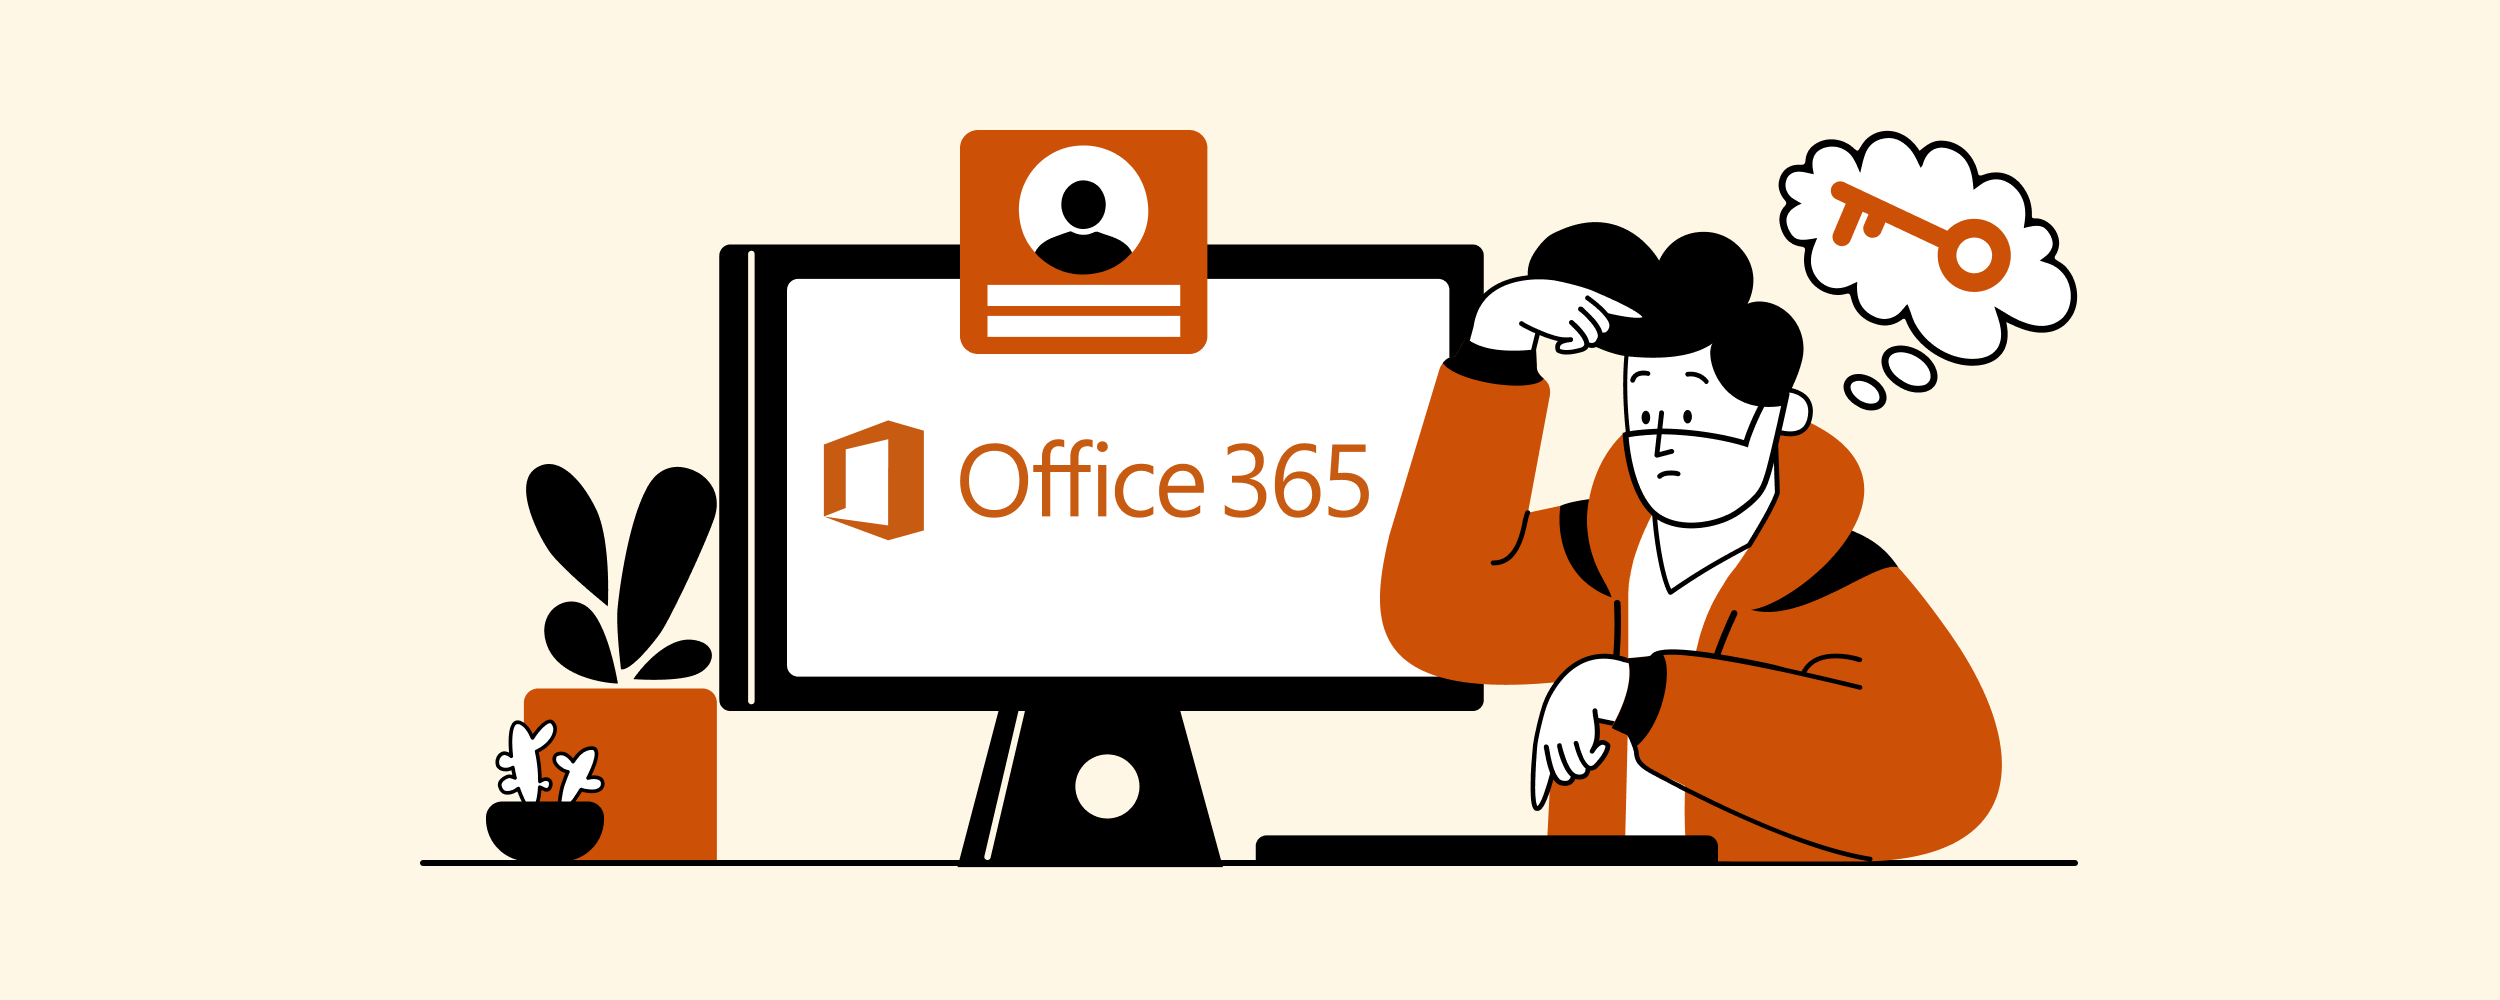 Outlook/Office 365 app password